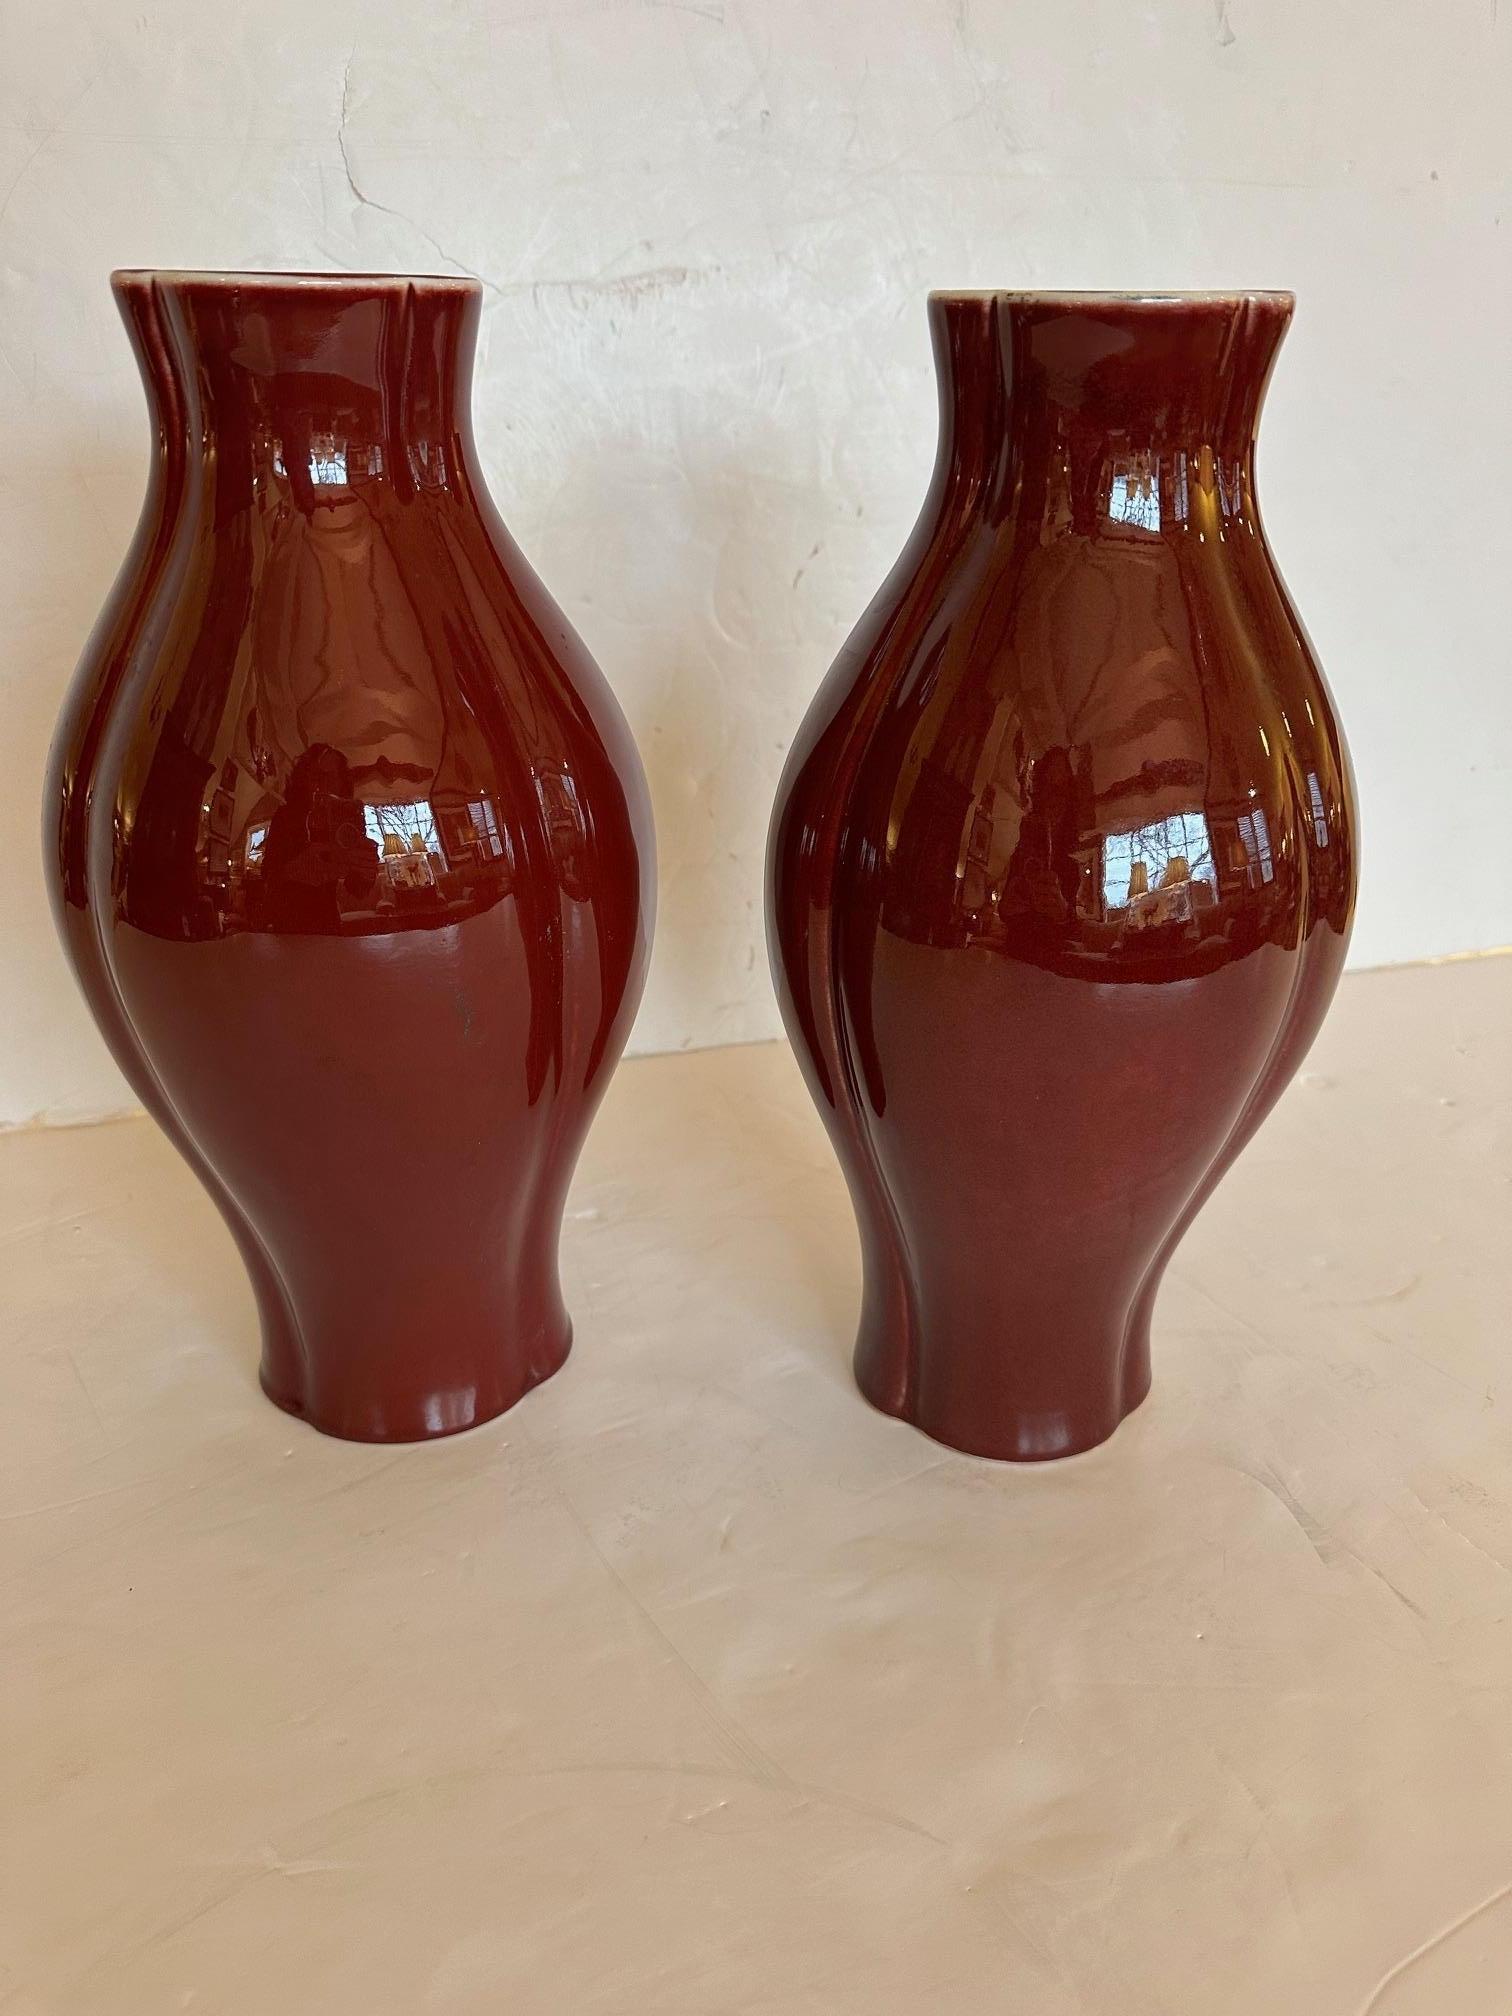 Jolie paire de vases en céramique de couleur sang de bœuf, à la glaçure brillante, dont le haut et le bas sont joliment festonnés.